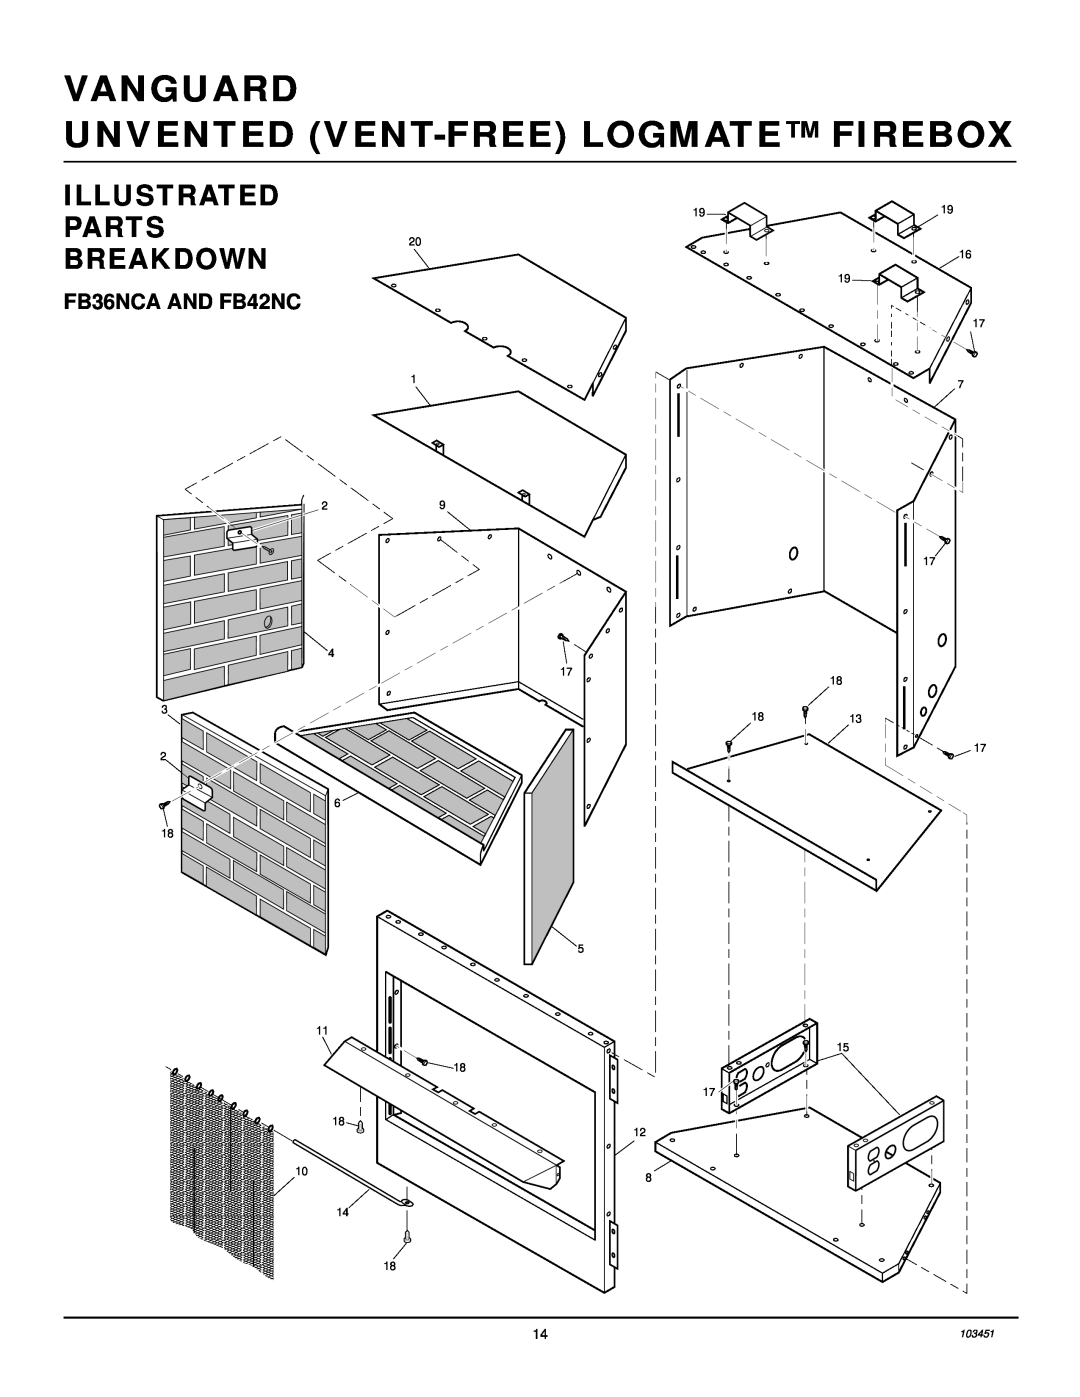 Desa FB36NCA, FB42NC, FB36CA, FB42C Illustrated, Parts, Breakdown, Vanguard Unvented Vent-Freelogmate Firebox 